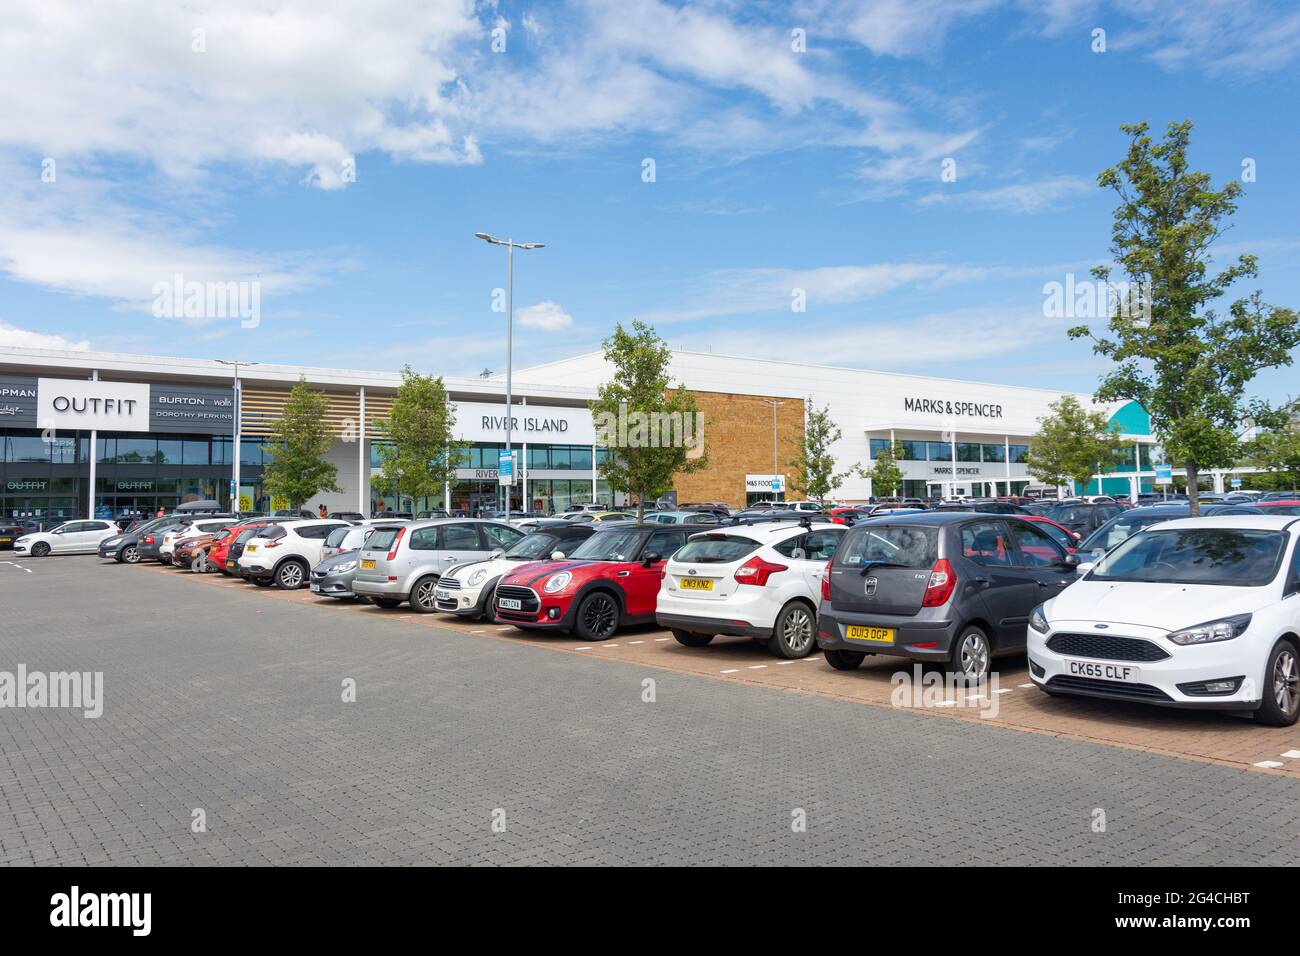 Magasins de détail, Banbury Gateway Shopping Park, Acorn Way, Banbury, Oxfordshire, Angleterre, Royaume-Uni Banque D'Images